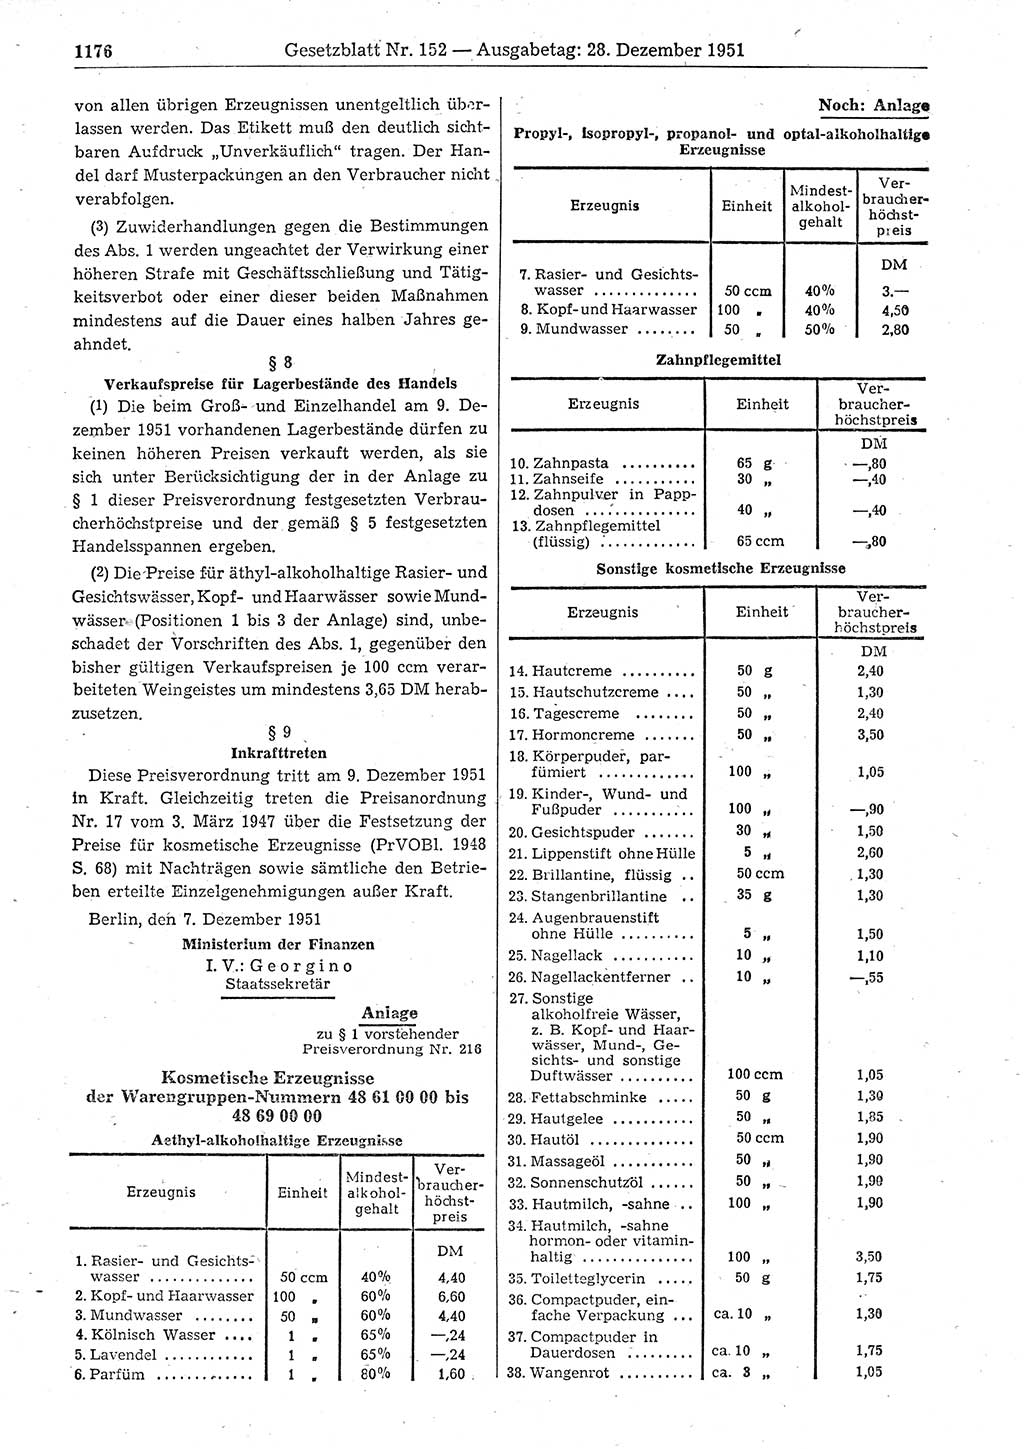 Gesetzblatt (GBl.) der Deutschen Demokratischen Republik (DDR) 1951, Seite 1176 (GBl. DDR 1951, S. 1176)